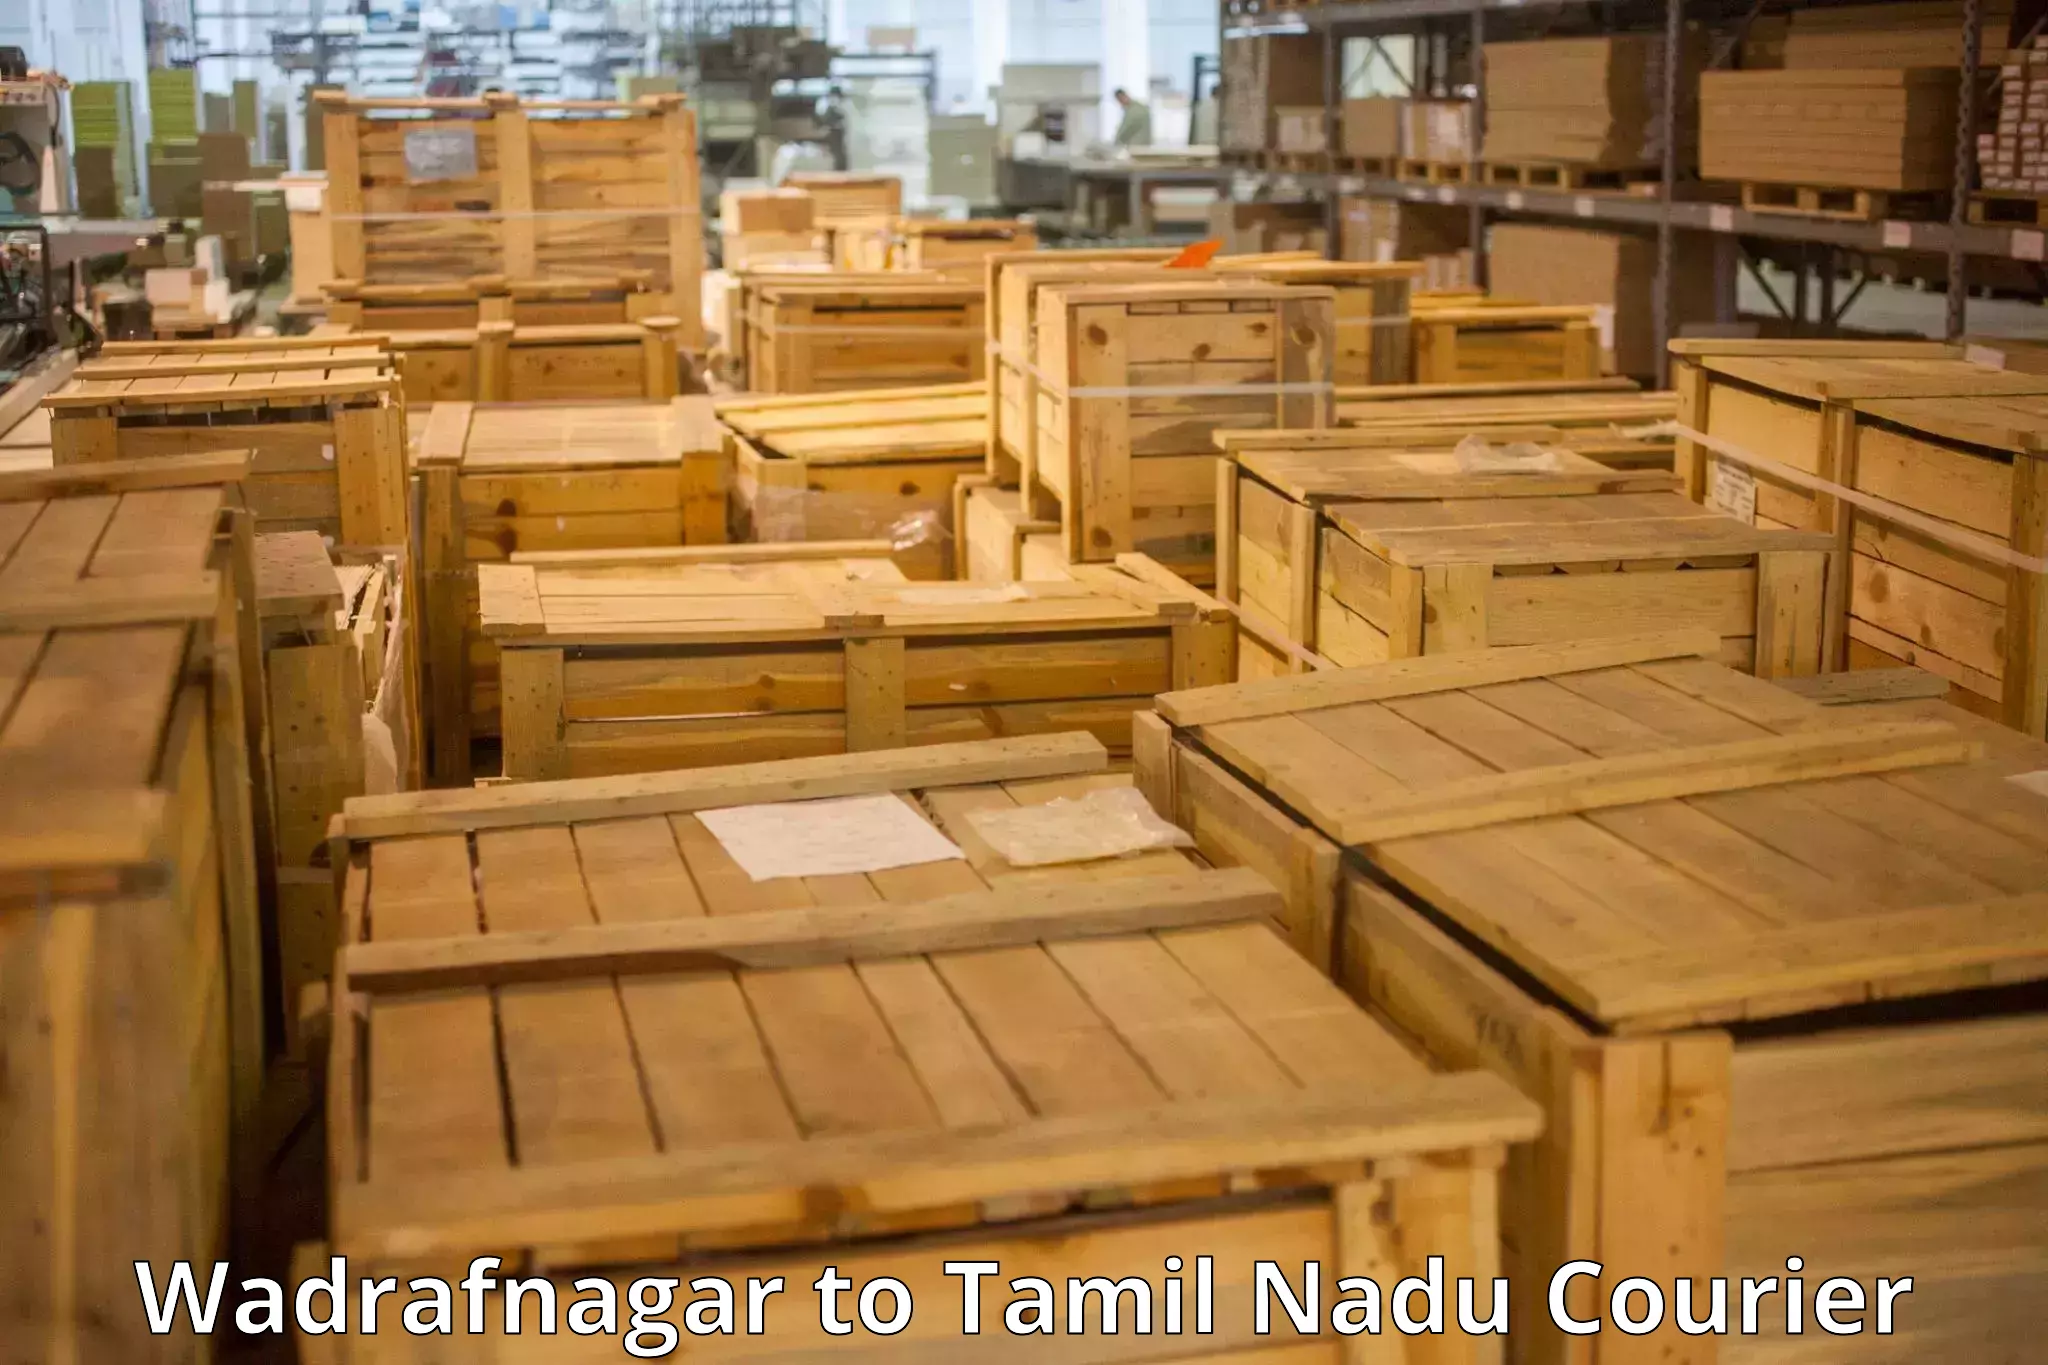 Luggage delivery estimate Wadrafnagar to Mannargudi